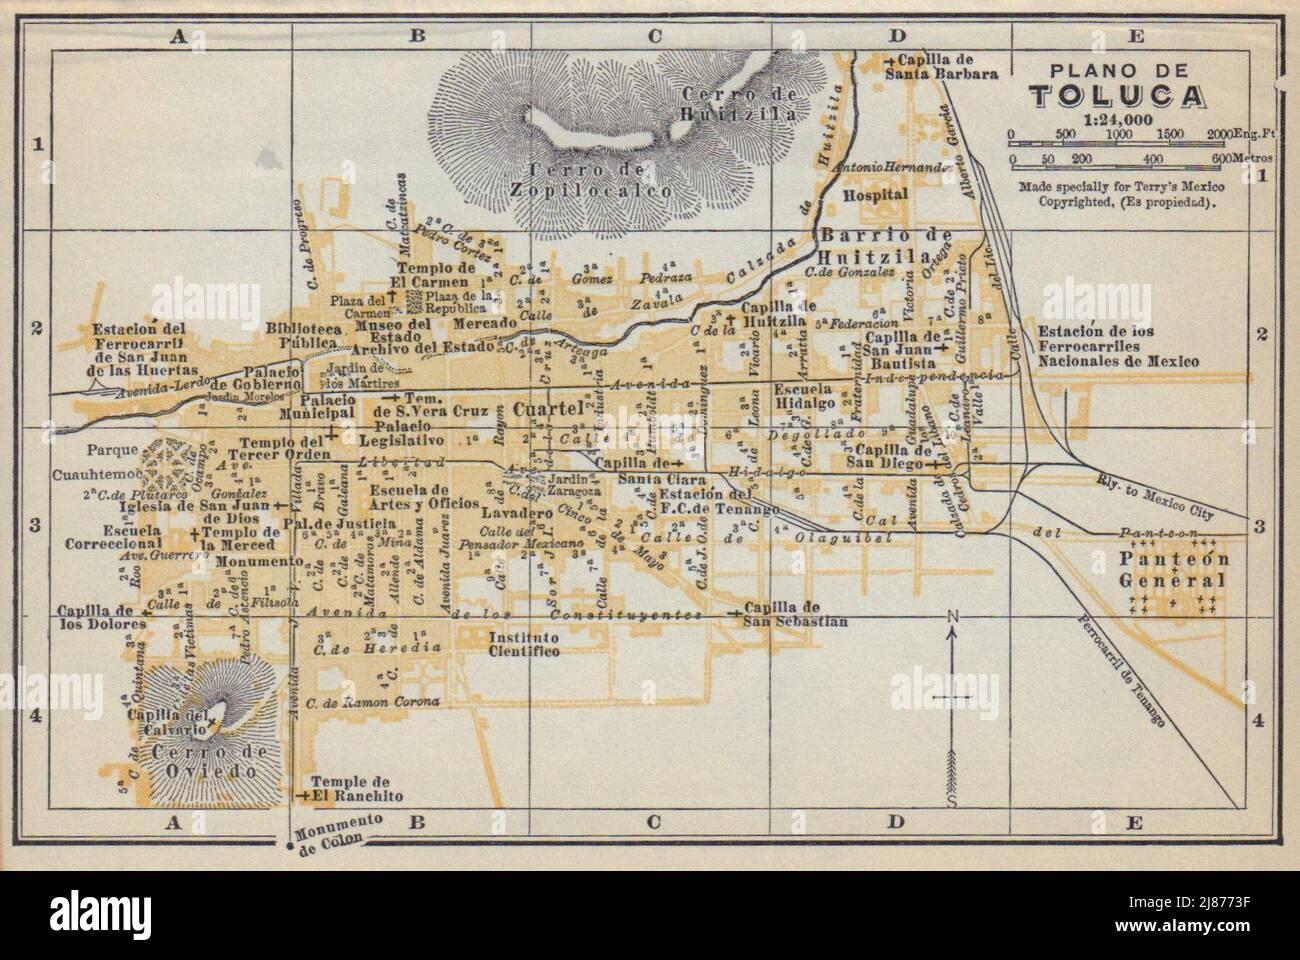 Plano de TOLUCA, Mexico. Mapa de la ciudad. City/town plan 1938 old Stock Photo